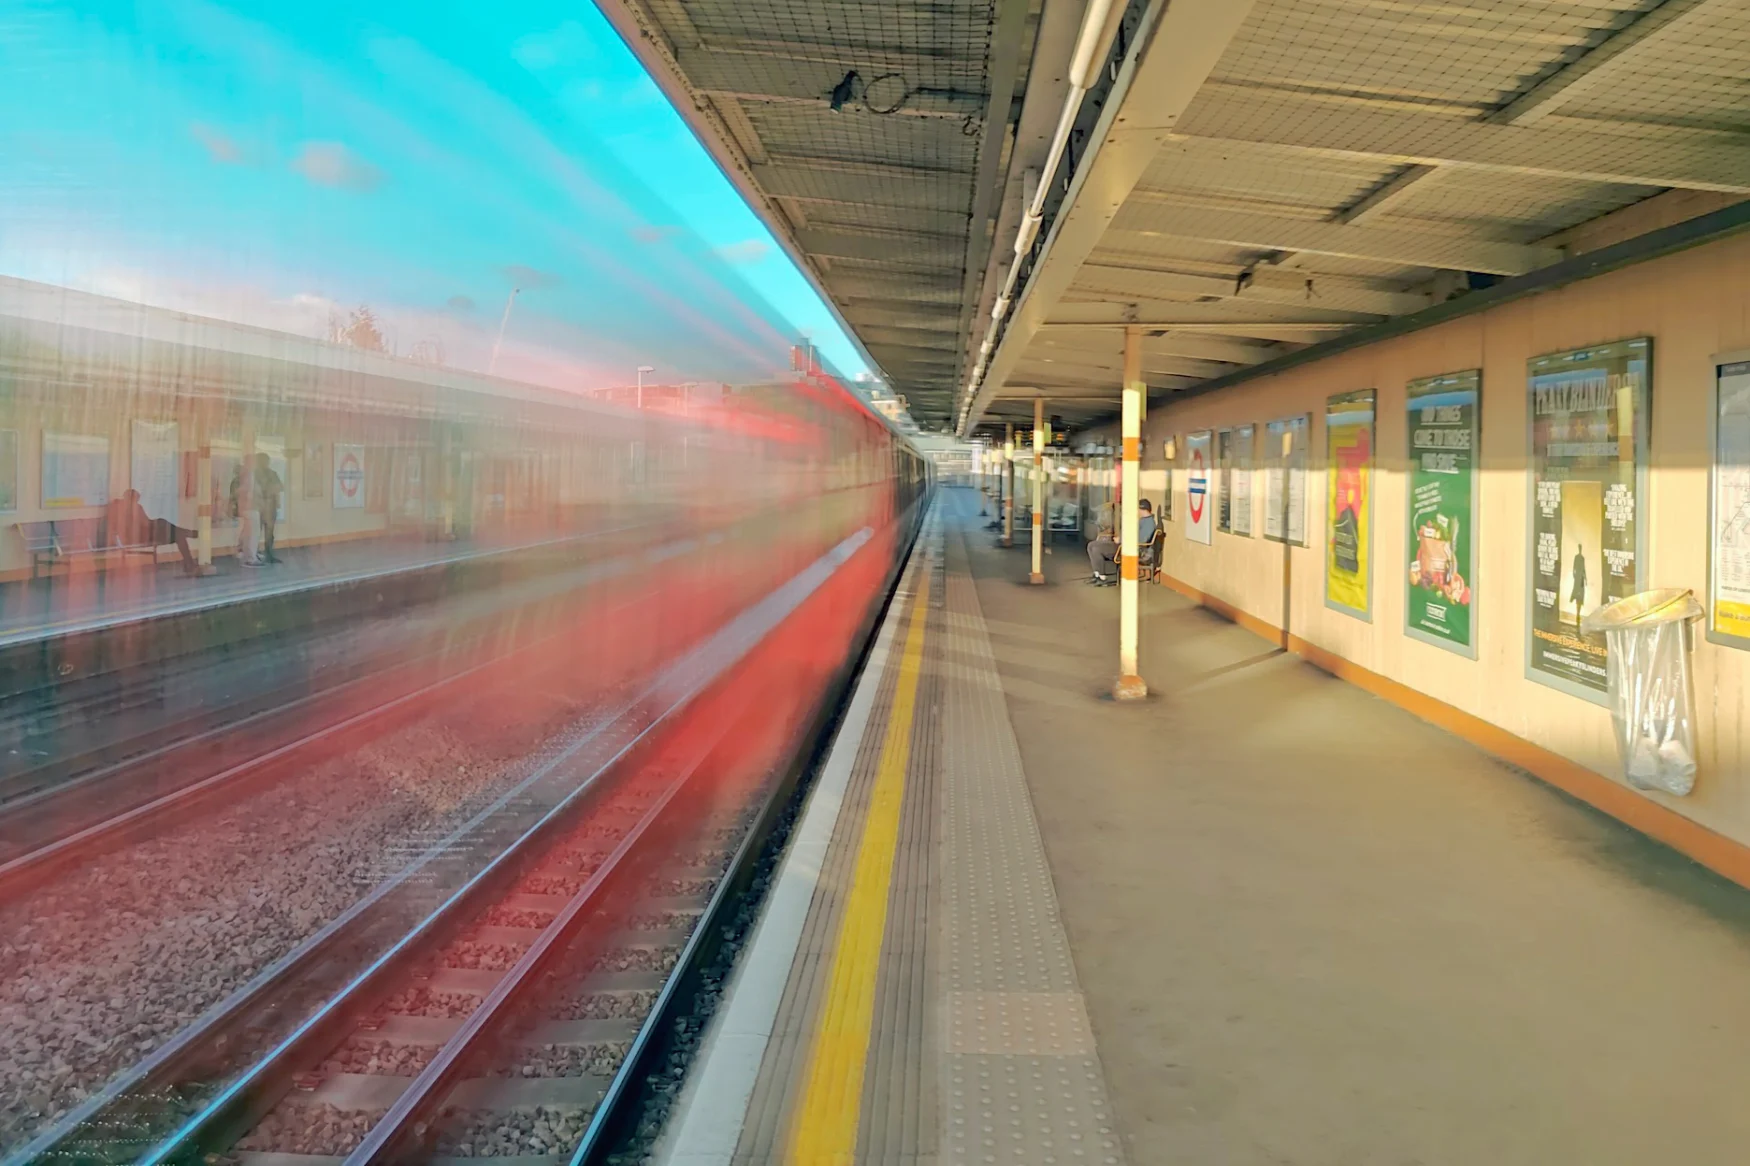 Une photo d'une rame de métro floue traversant une gare.